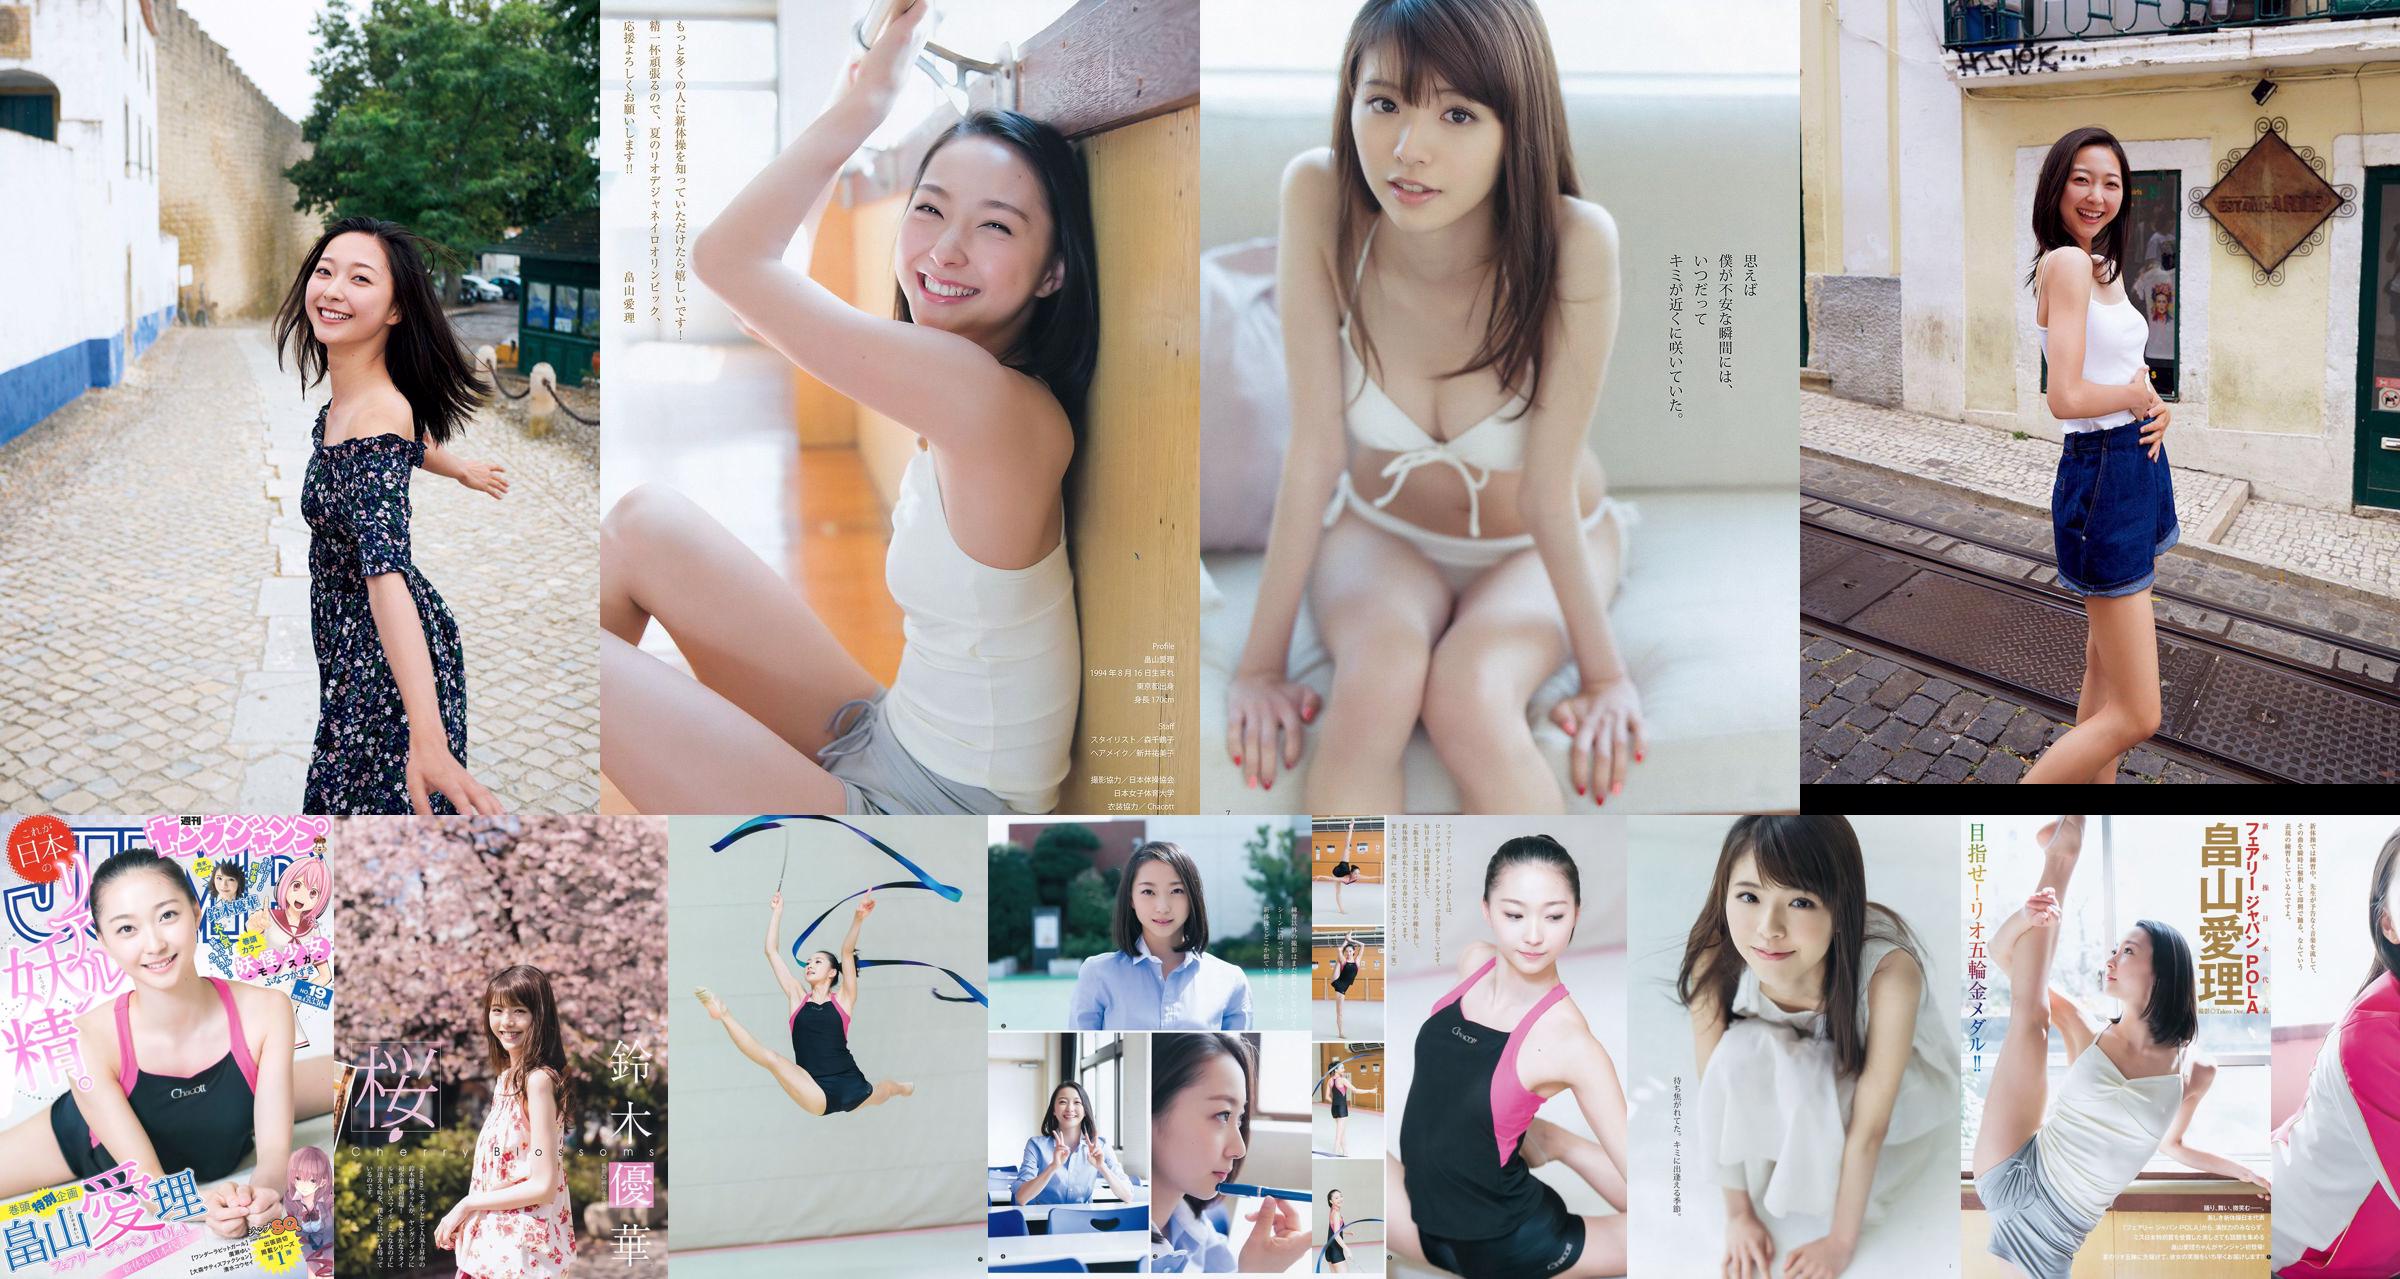 Айри Хатакеяма Юка Судзуки [Weekly Young Jump] Фото-журнал №19, 2016 г. No.e44712 Страница 1